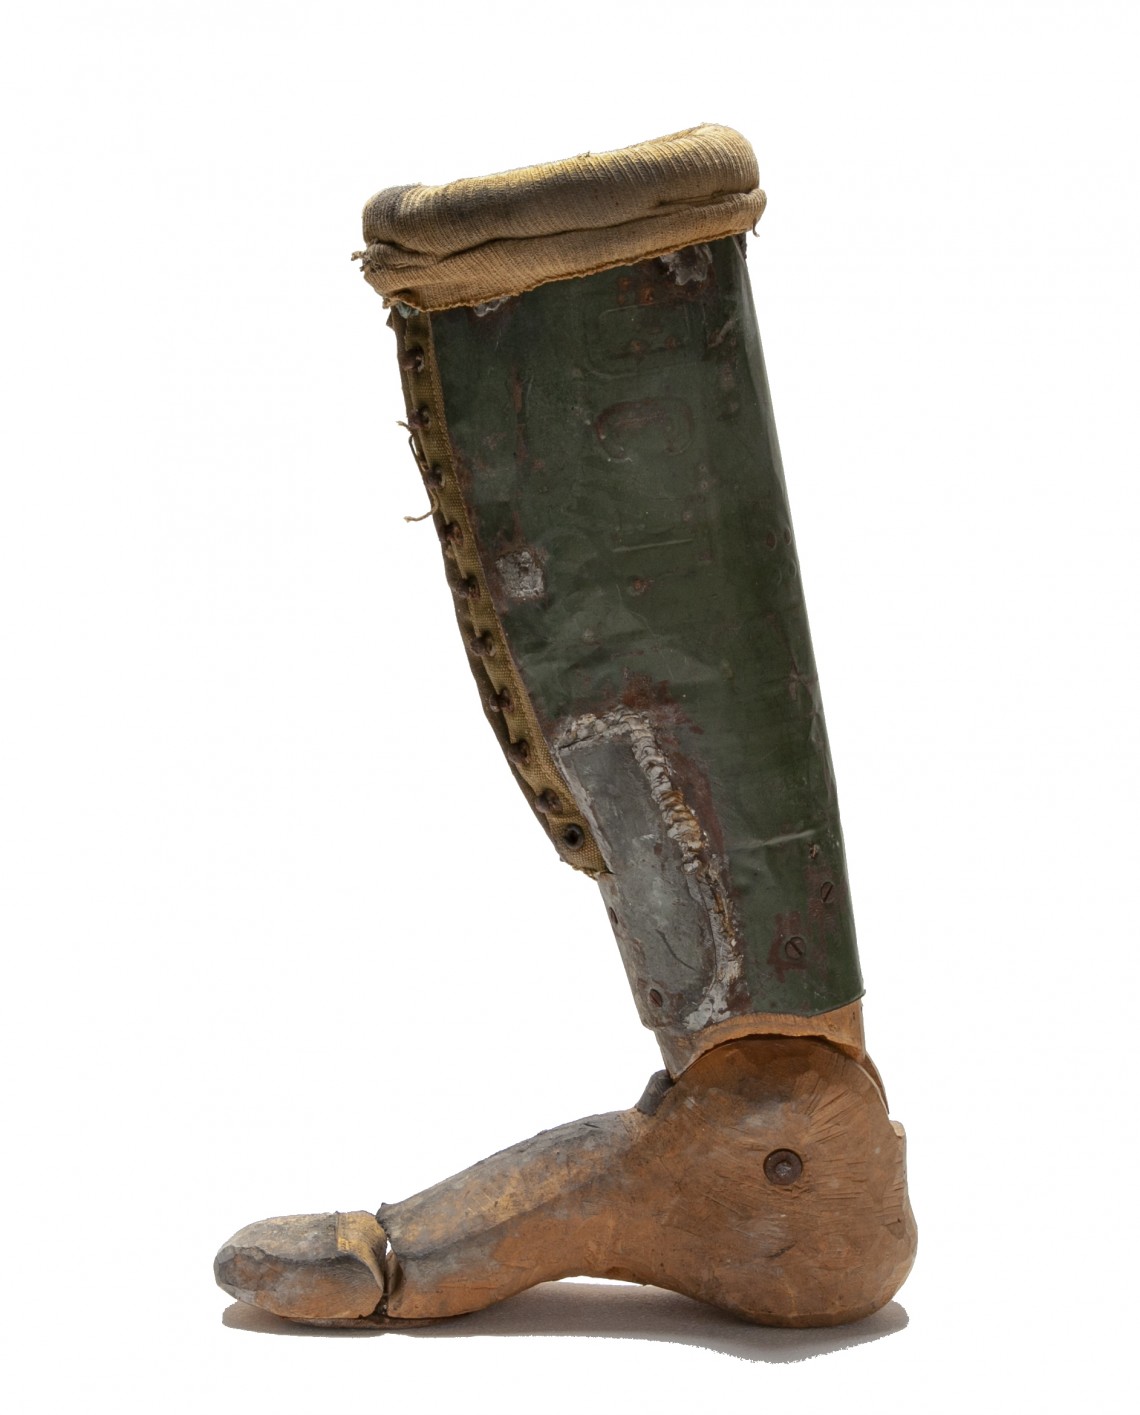 In Kriegsgefangenschaft nach dem zweiten Weltkrieg selbstgebaute provisorische Unterschenkelprothese aus Blech und Holz